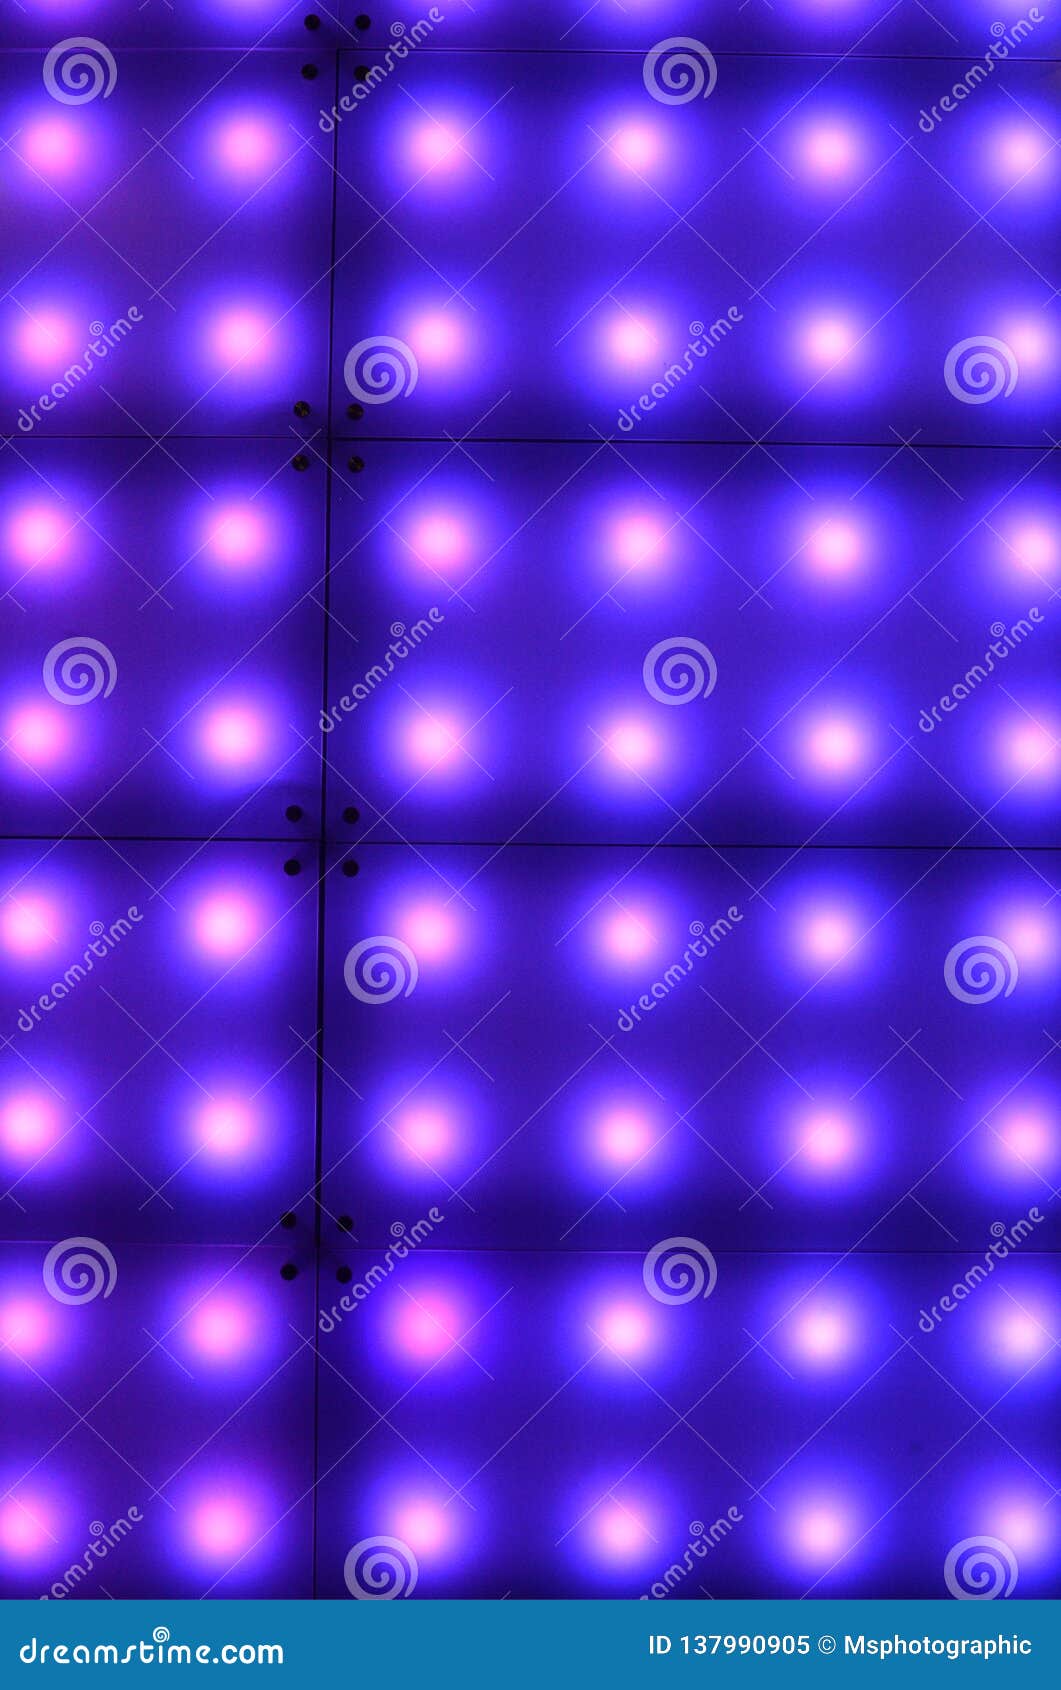 Fondo de la luz del LED imagen de archivo. Imagen de nightlife - 137990905